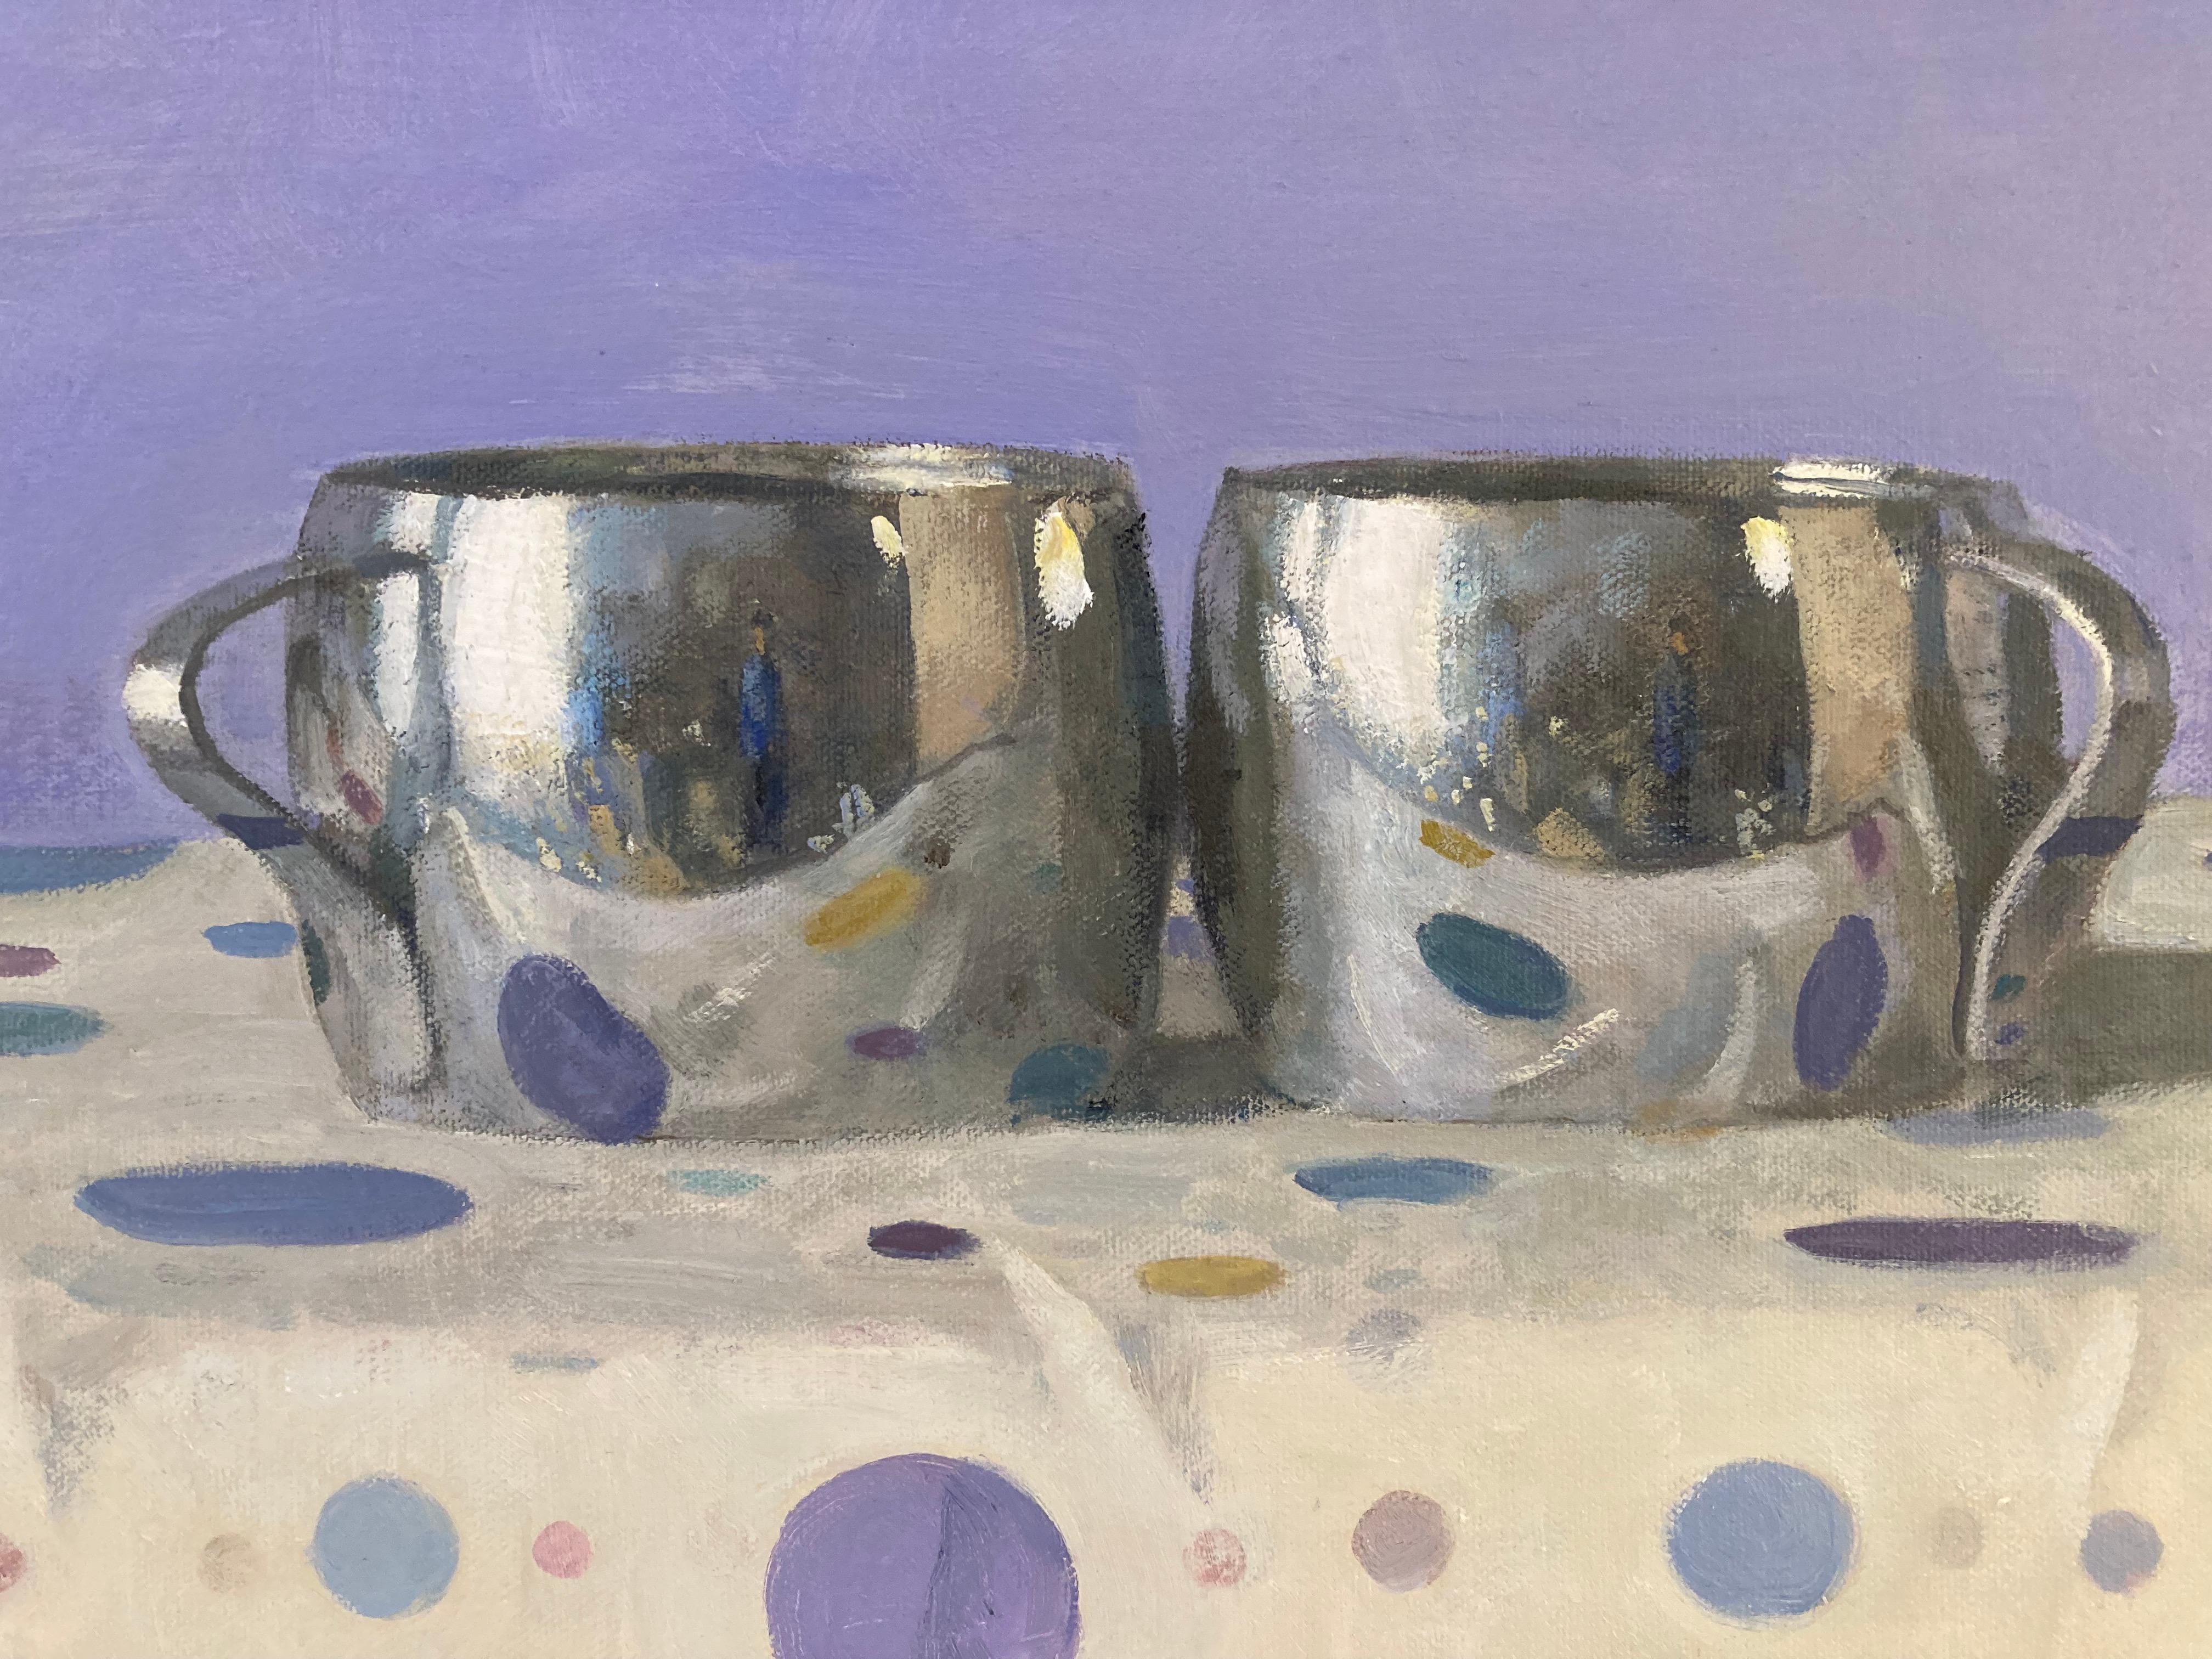 Zwei silberne Tassen, Porträt-Reflektionen, Tupfen, Lavendel, Gelb, Blau, Rosa